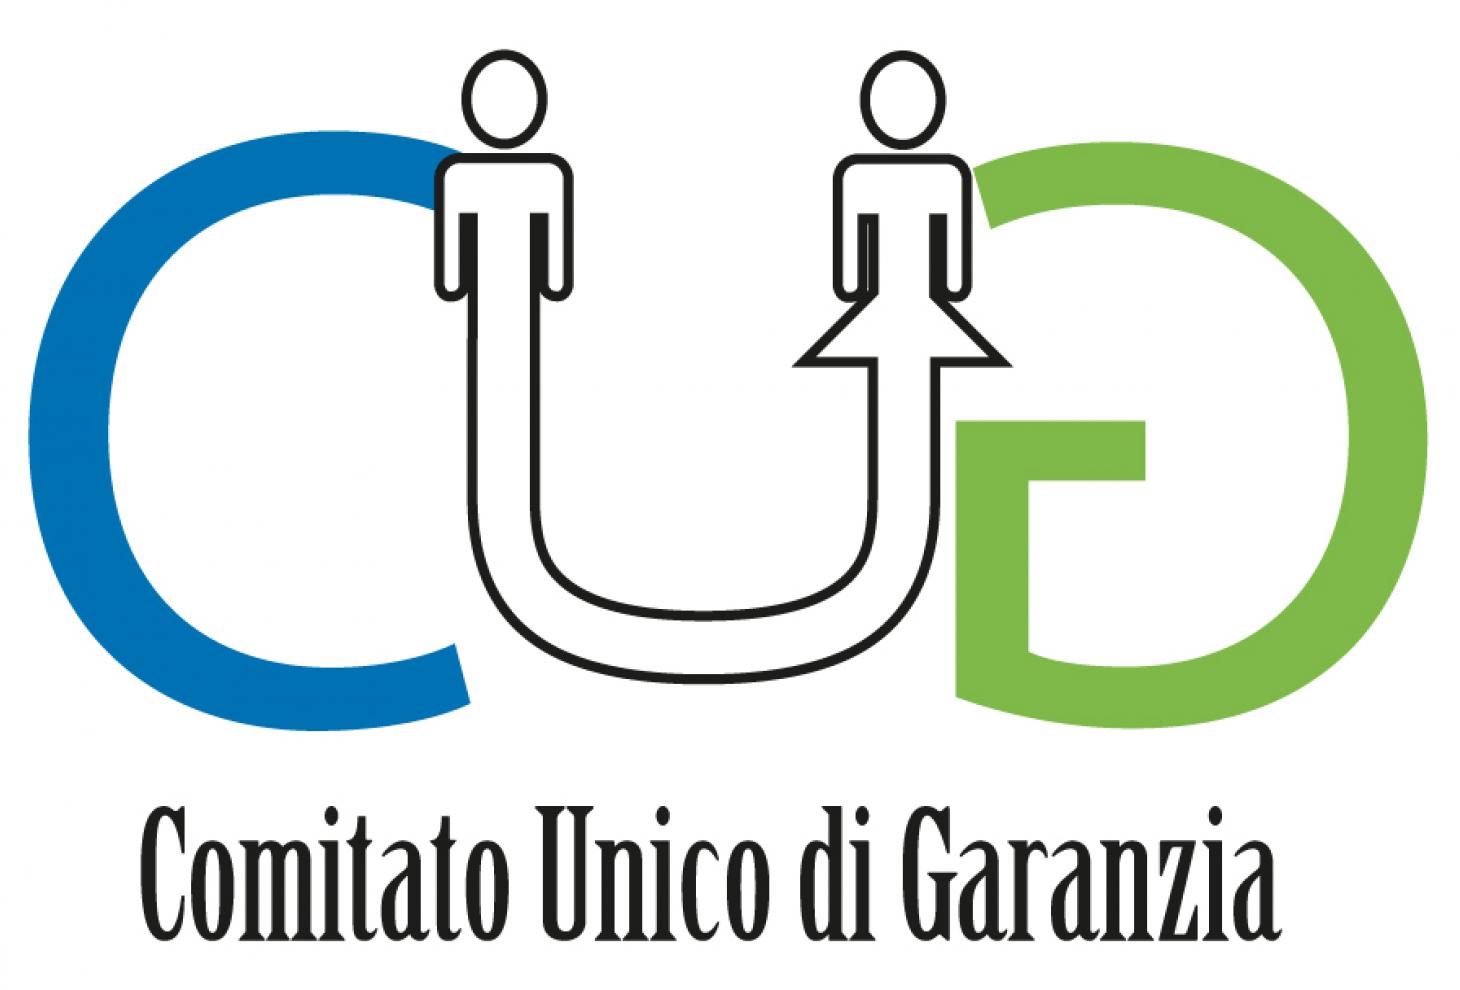 Logo CUG